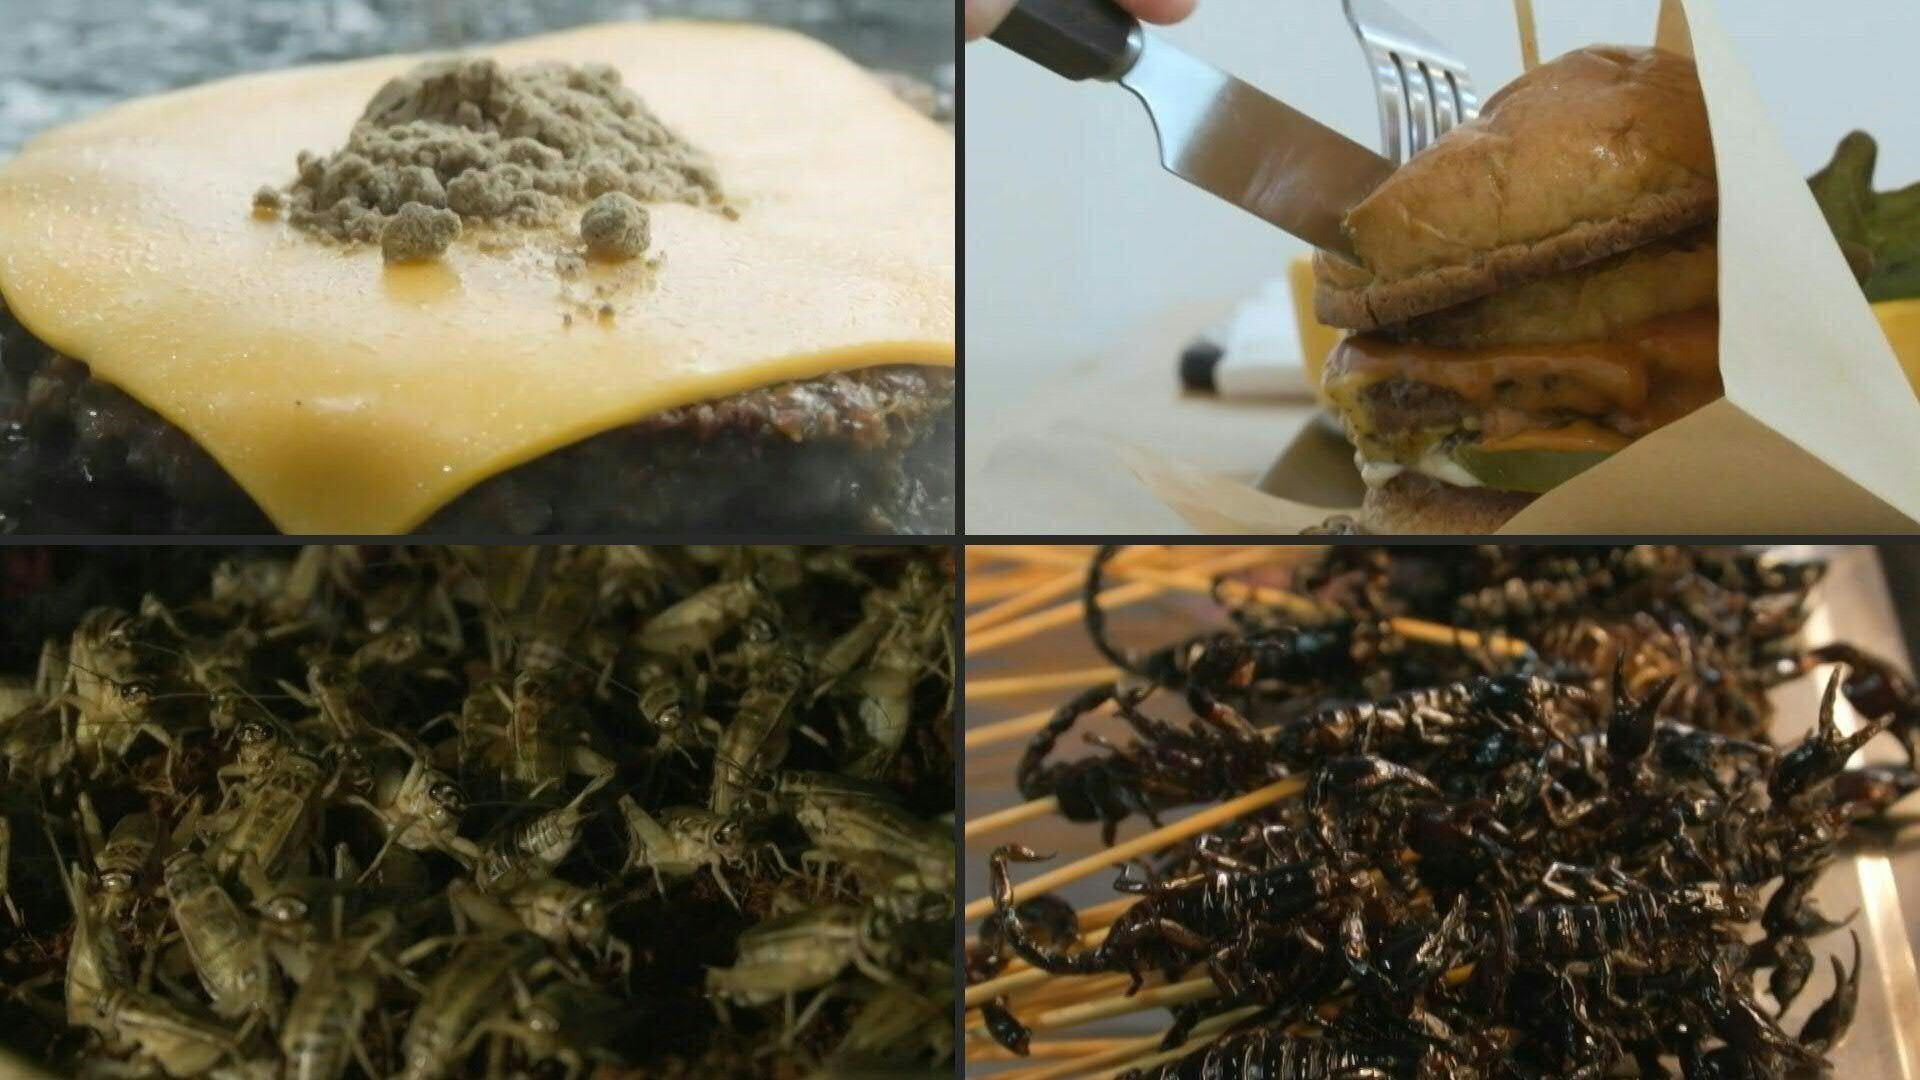 Barra energética, galleta o salchicha: los insectos, en particular los grillos, se encuentran en muchos platos de Tailandia, una señal del interés creciente por esta fuente de proteínas amigable con el planeta.